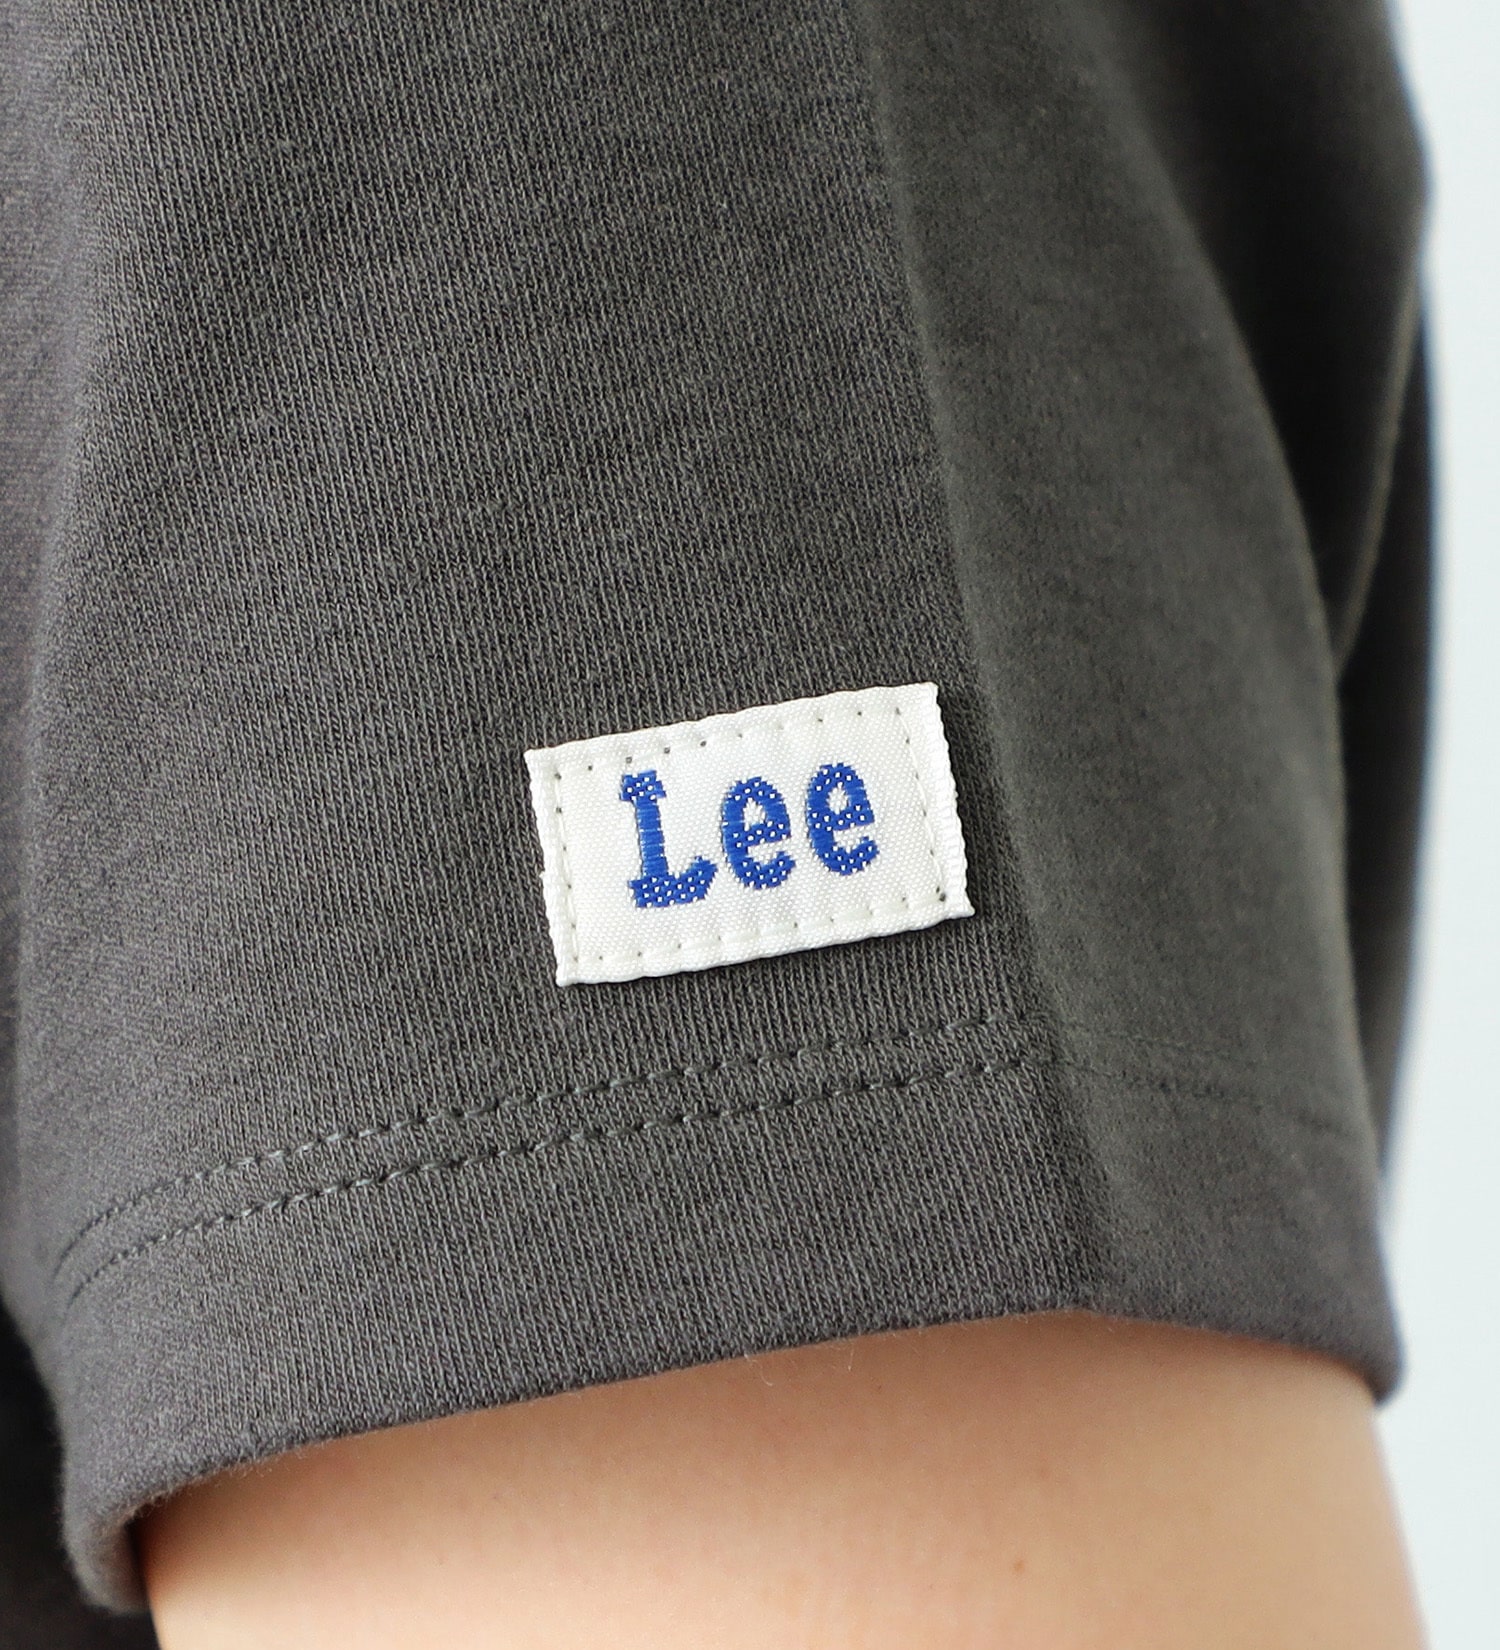 Lee(リー)のコンパクトフィット ショートスリーブTee|トップス/Tシャツ/カットソー/レディース|チャコールグレー